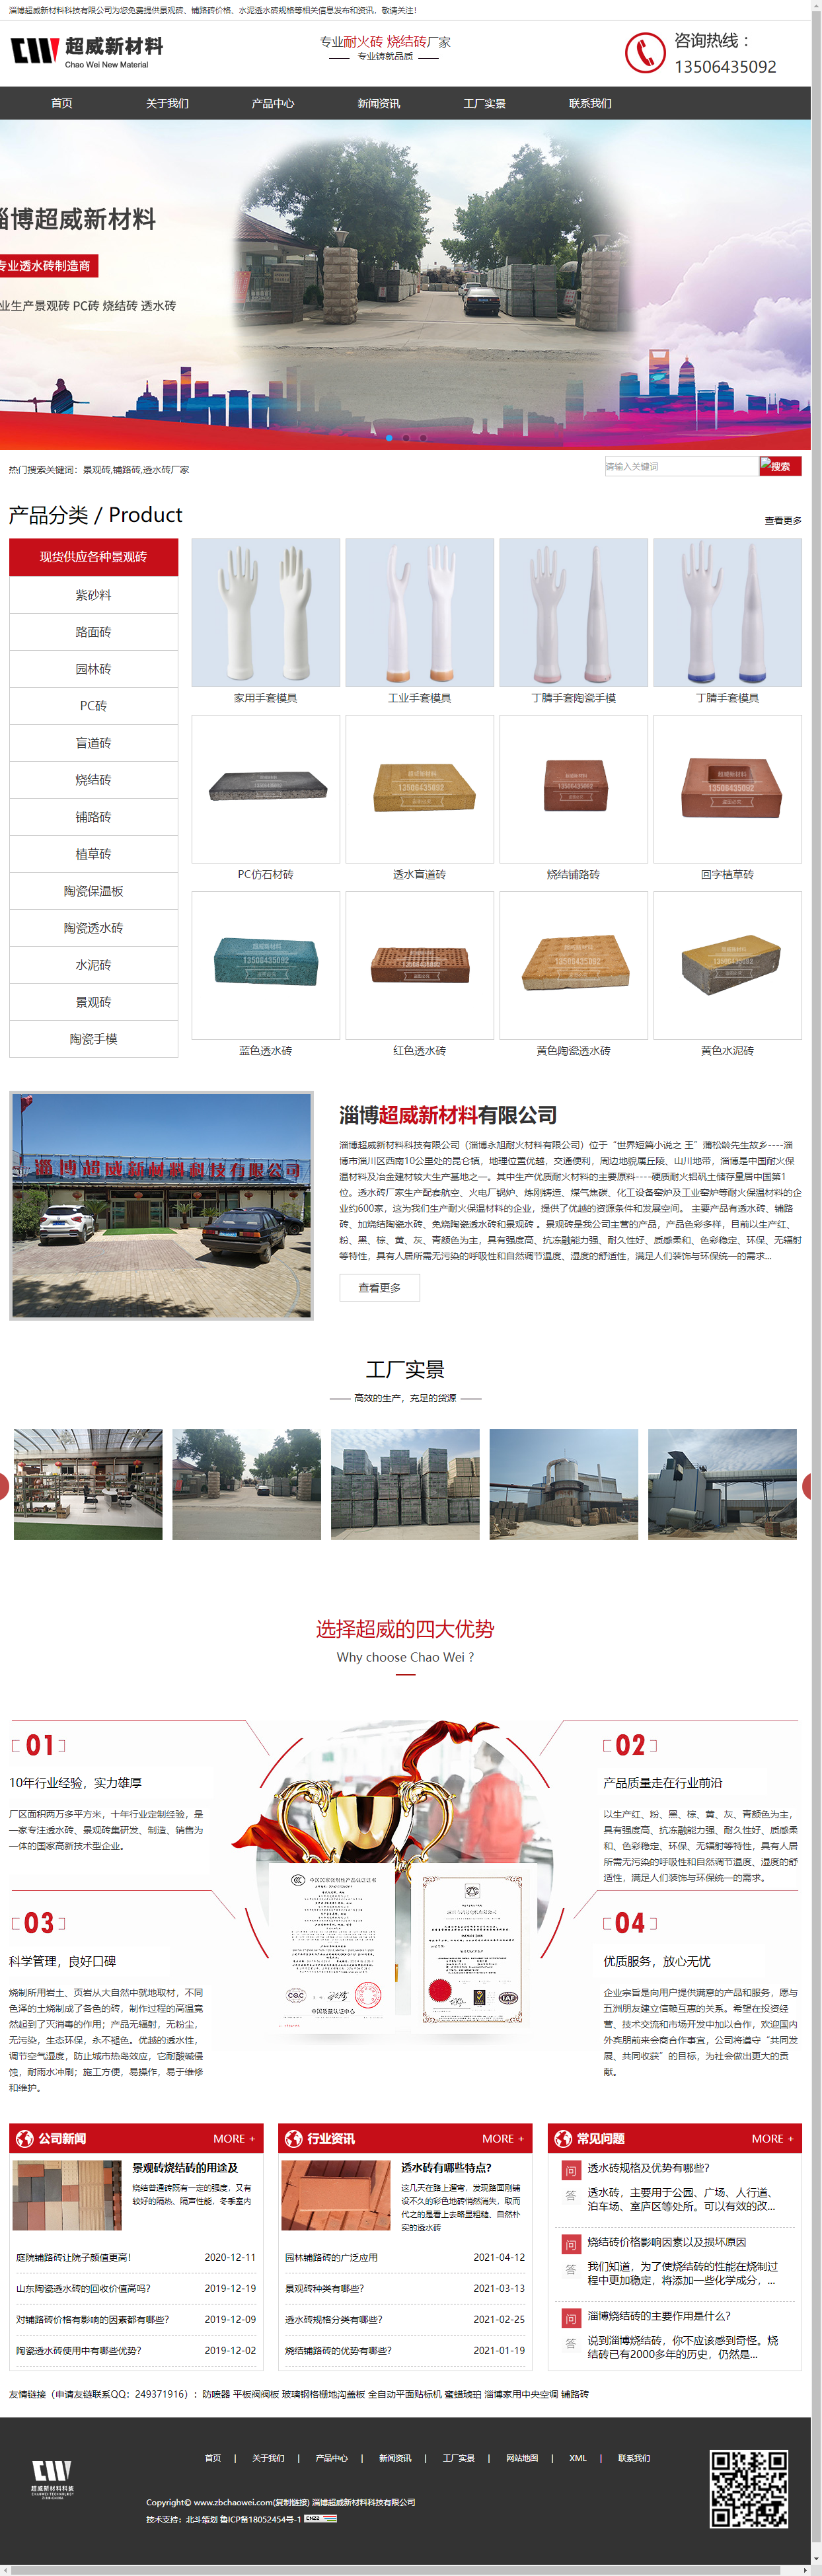 淄博超威新材料科技有限公司网站案例